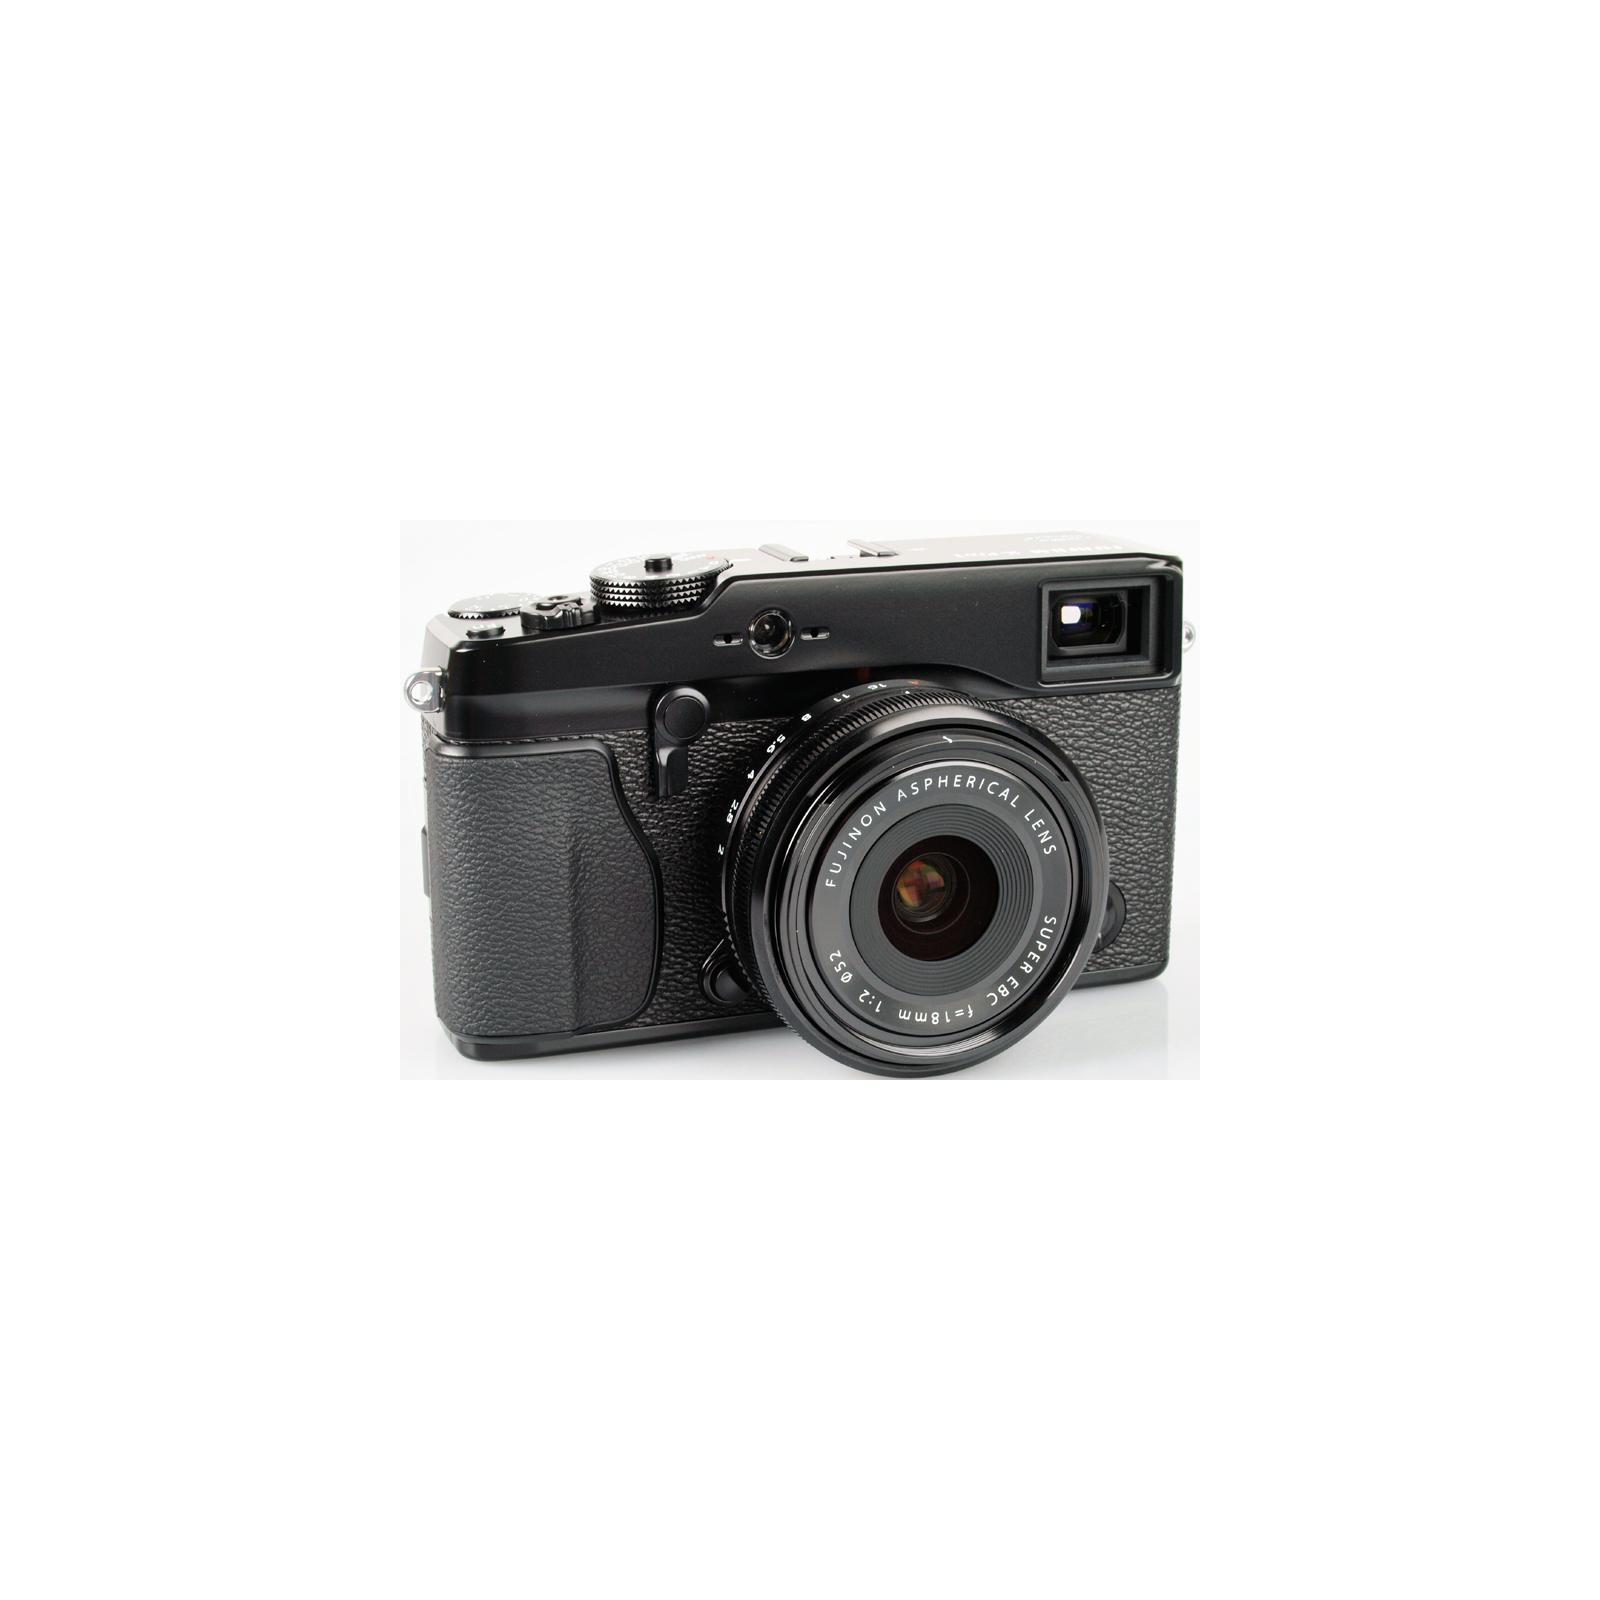 Объектив Fujifilm XF-18mm F2.0 R (16240743) изображение 4